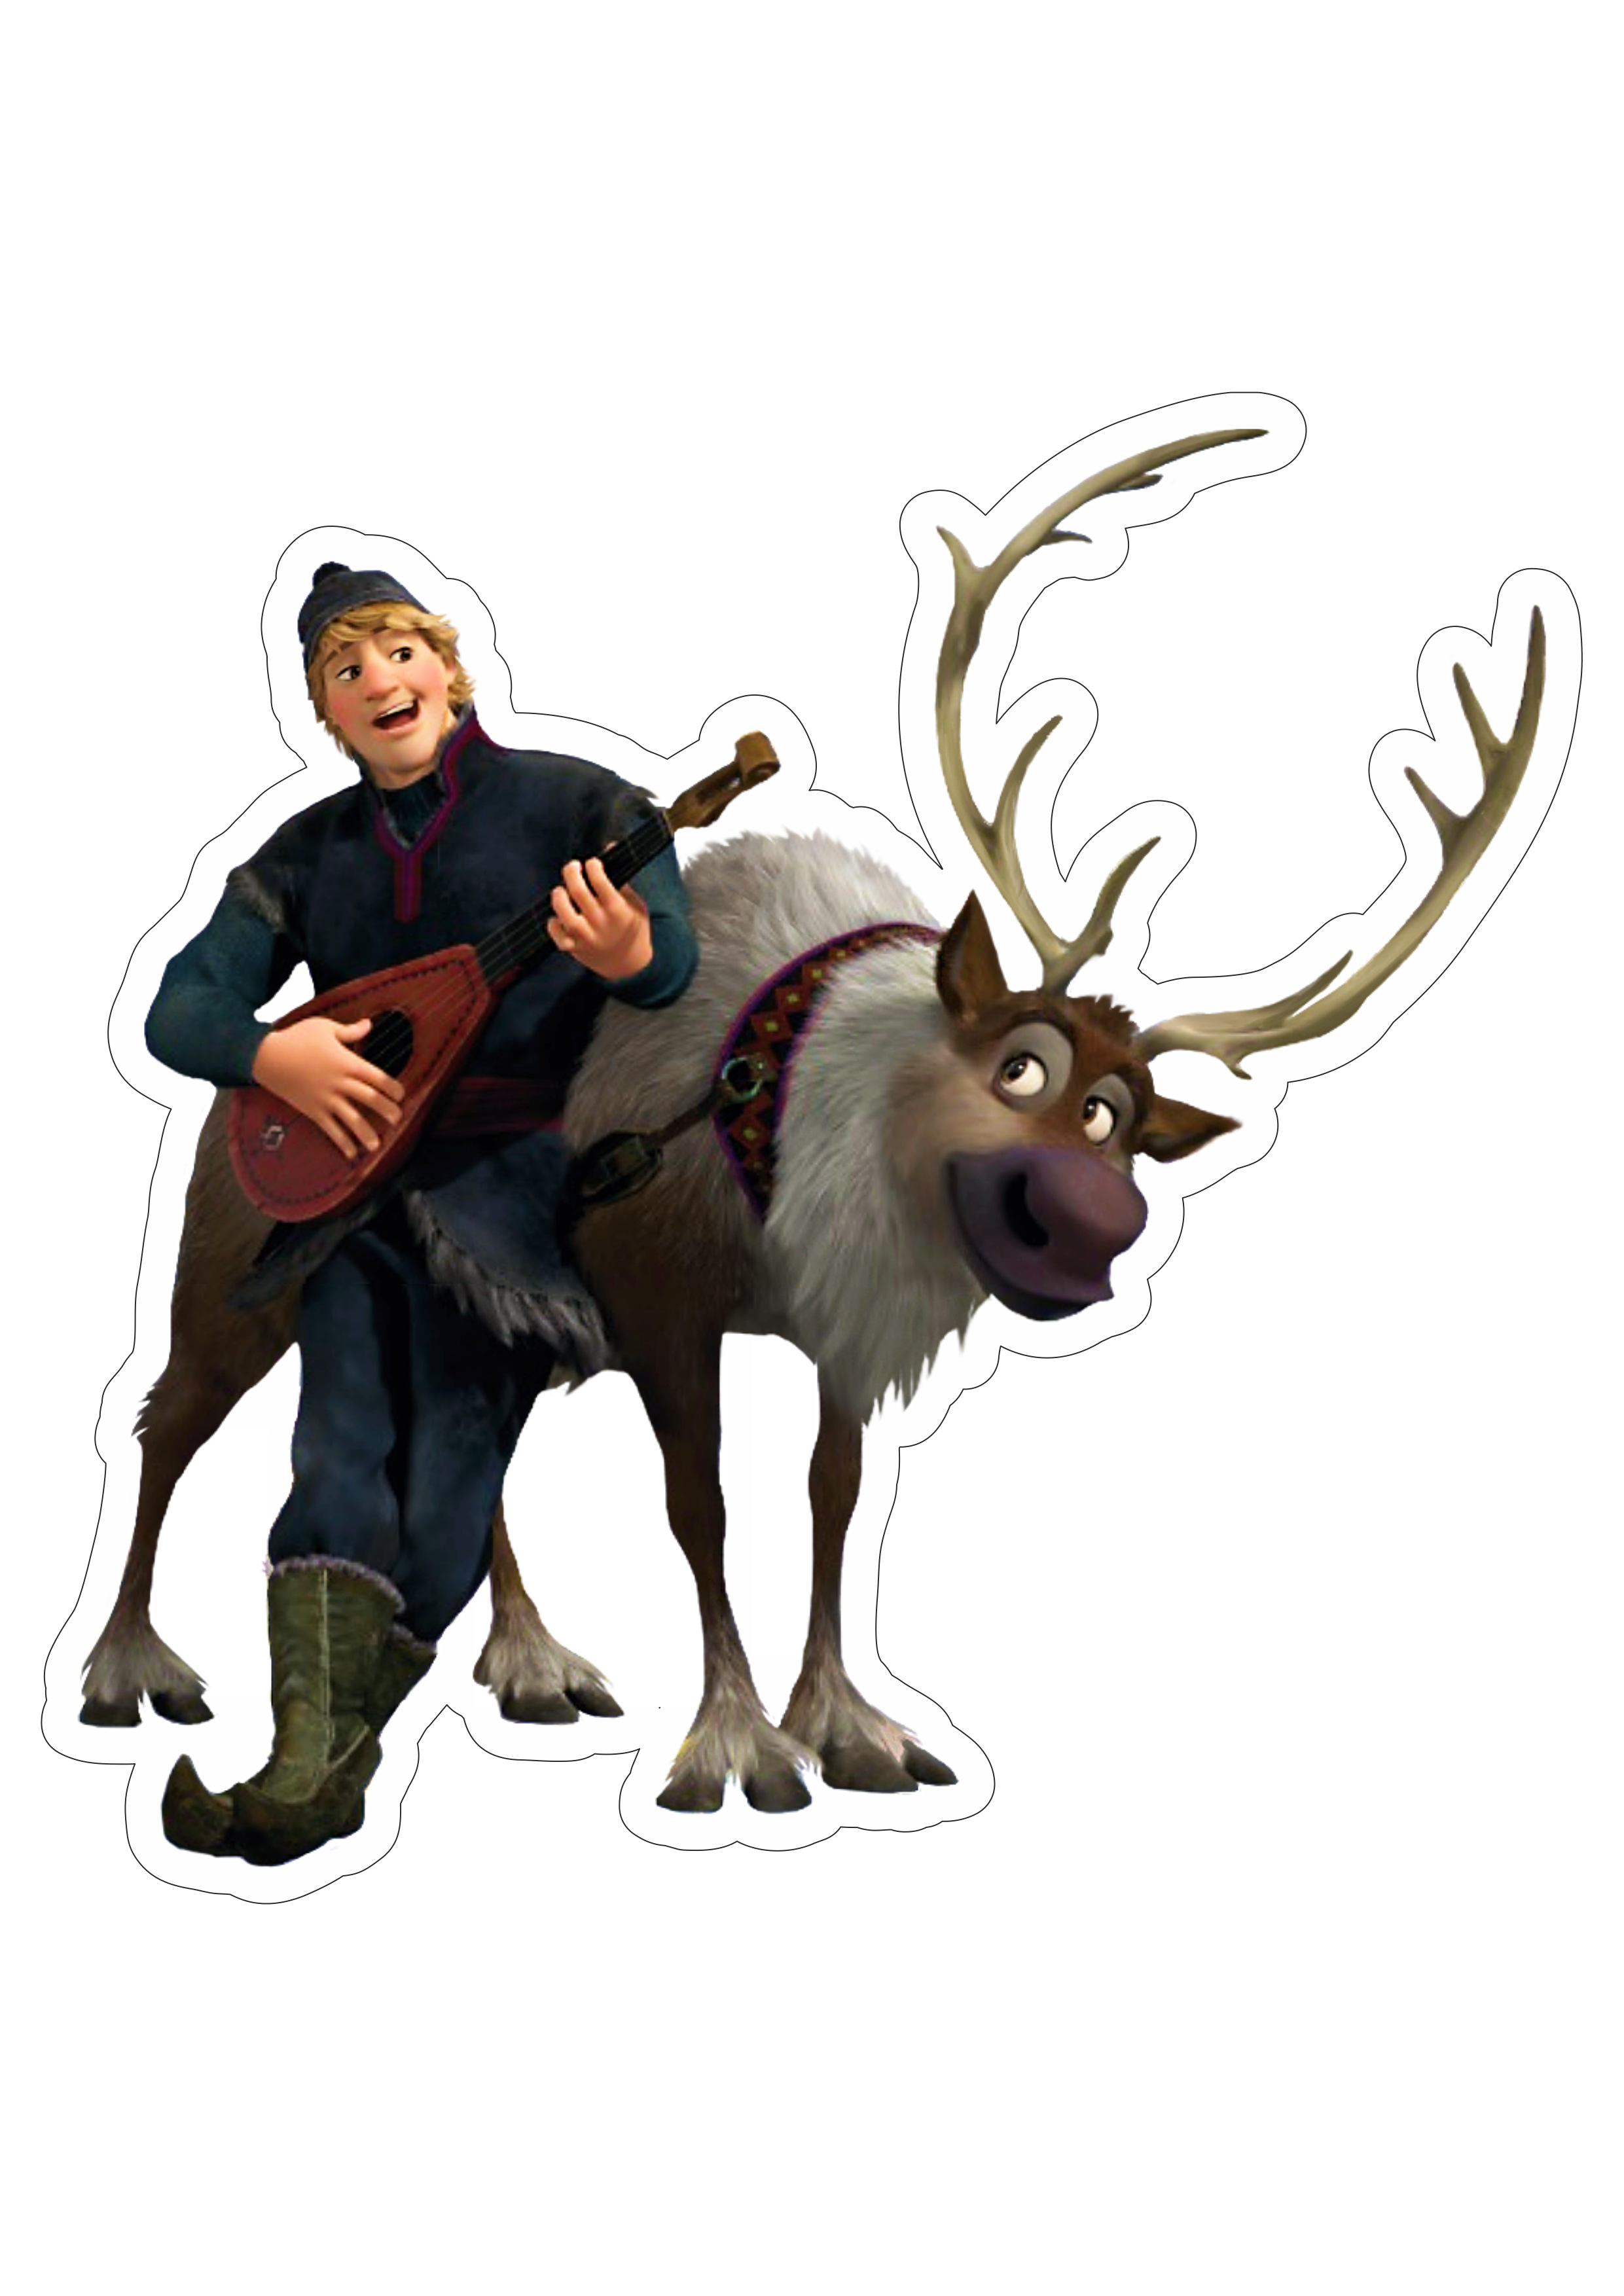 Frozen personagens Kristoff e Sven disney animação infantil streaming imagem fundo transparente com contorno artes gráficas png